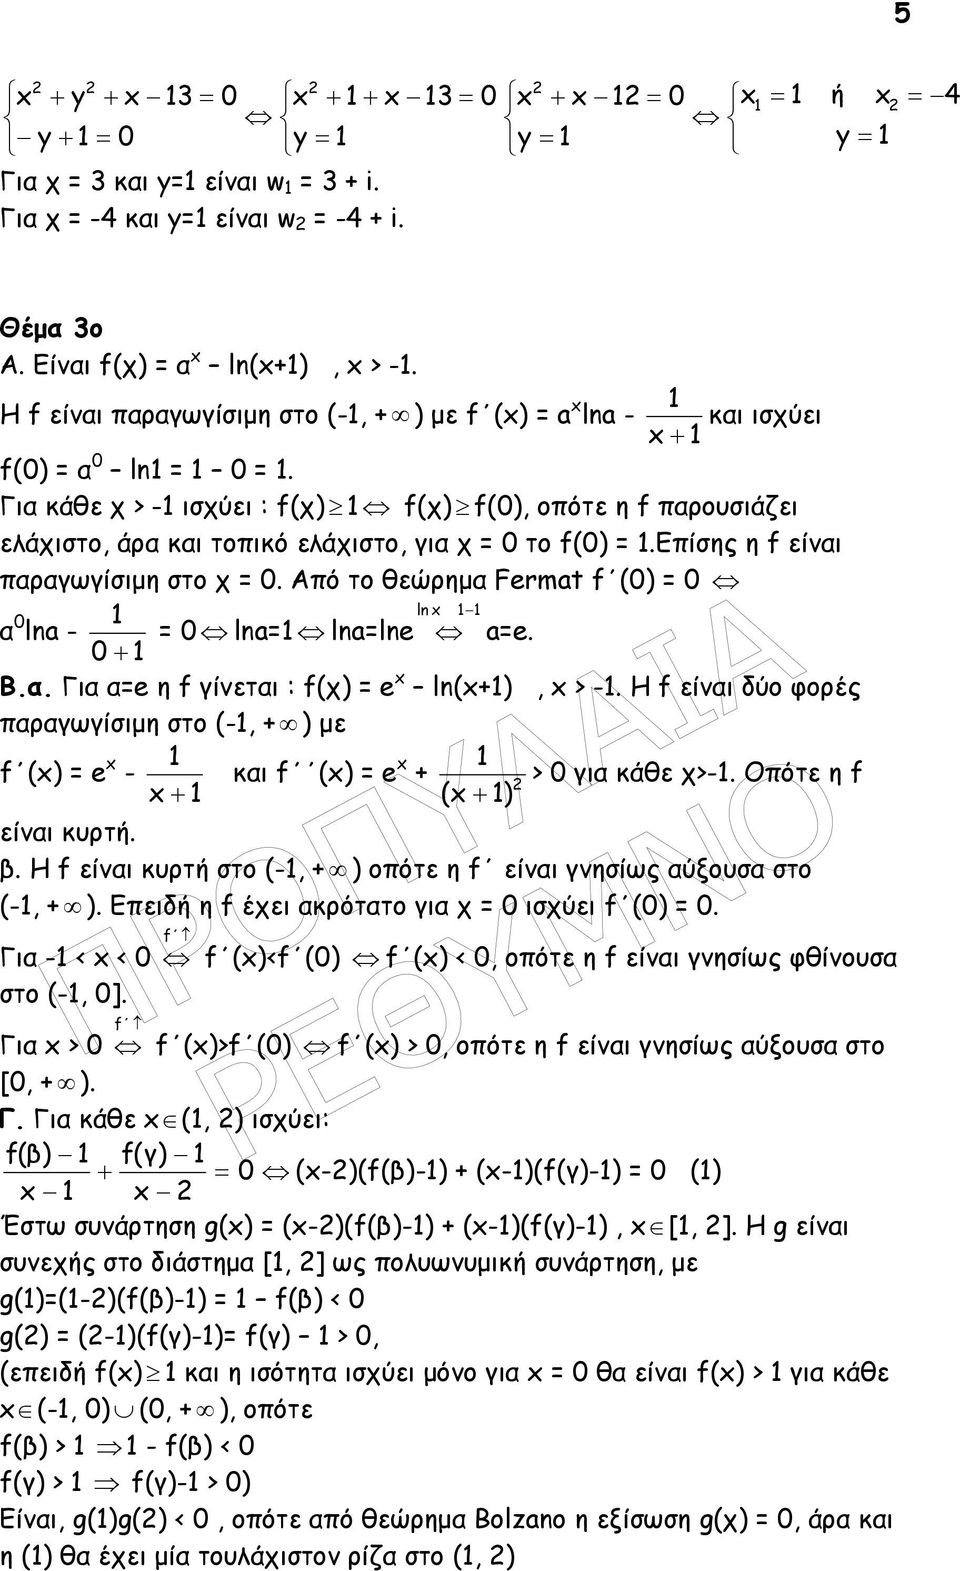 1 Β.. Γι e η f γίνετι : f(χ) e ln(1), > -1. H f είνι δύο φορές πργωγίσιµη στο (-1, ) µε f () e 1 - κι f () e 1 > γι κάθε χ>-1. Οπότε η f 1 ( 1) είνι κυρτή. β.